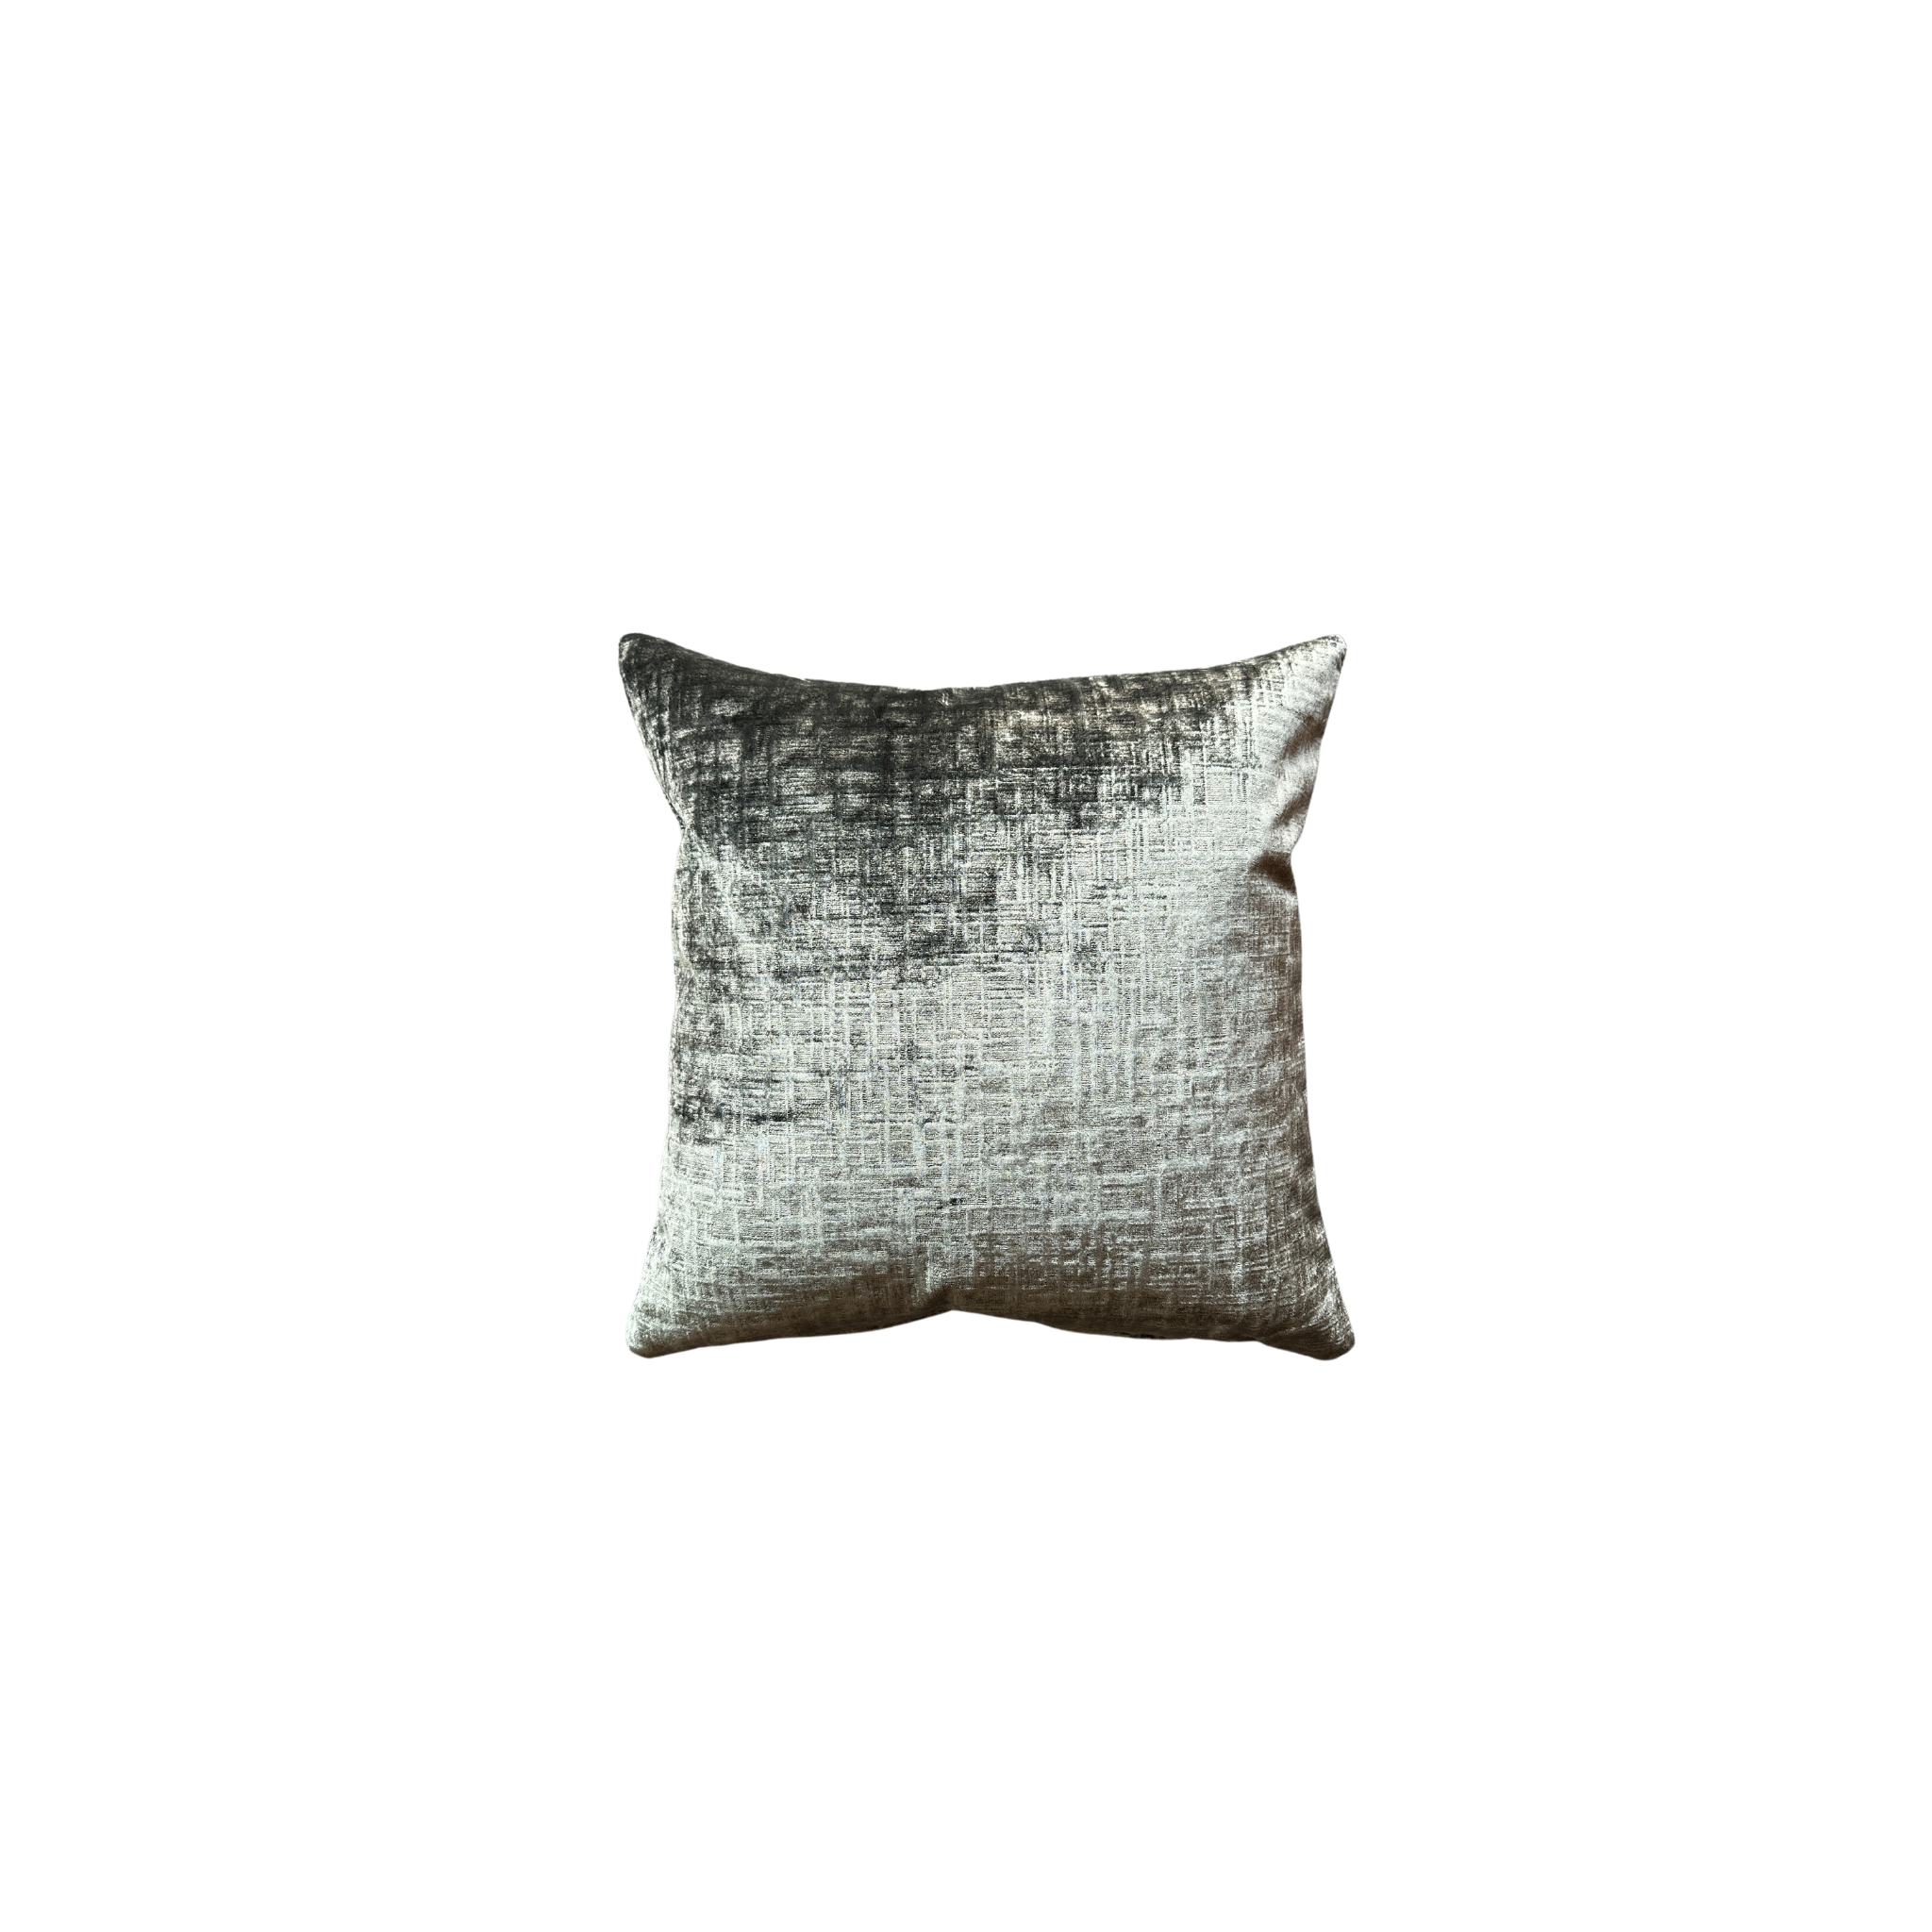 Grayhound Pillow